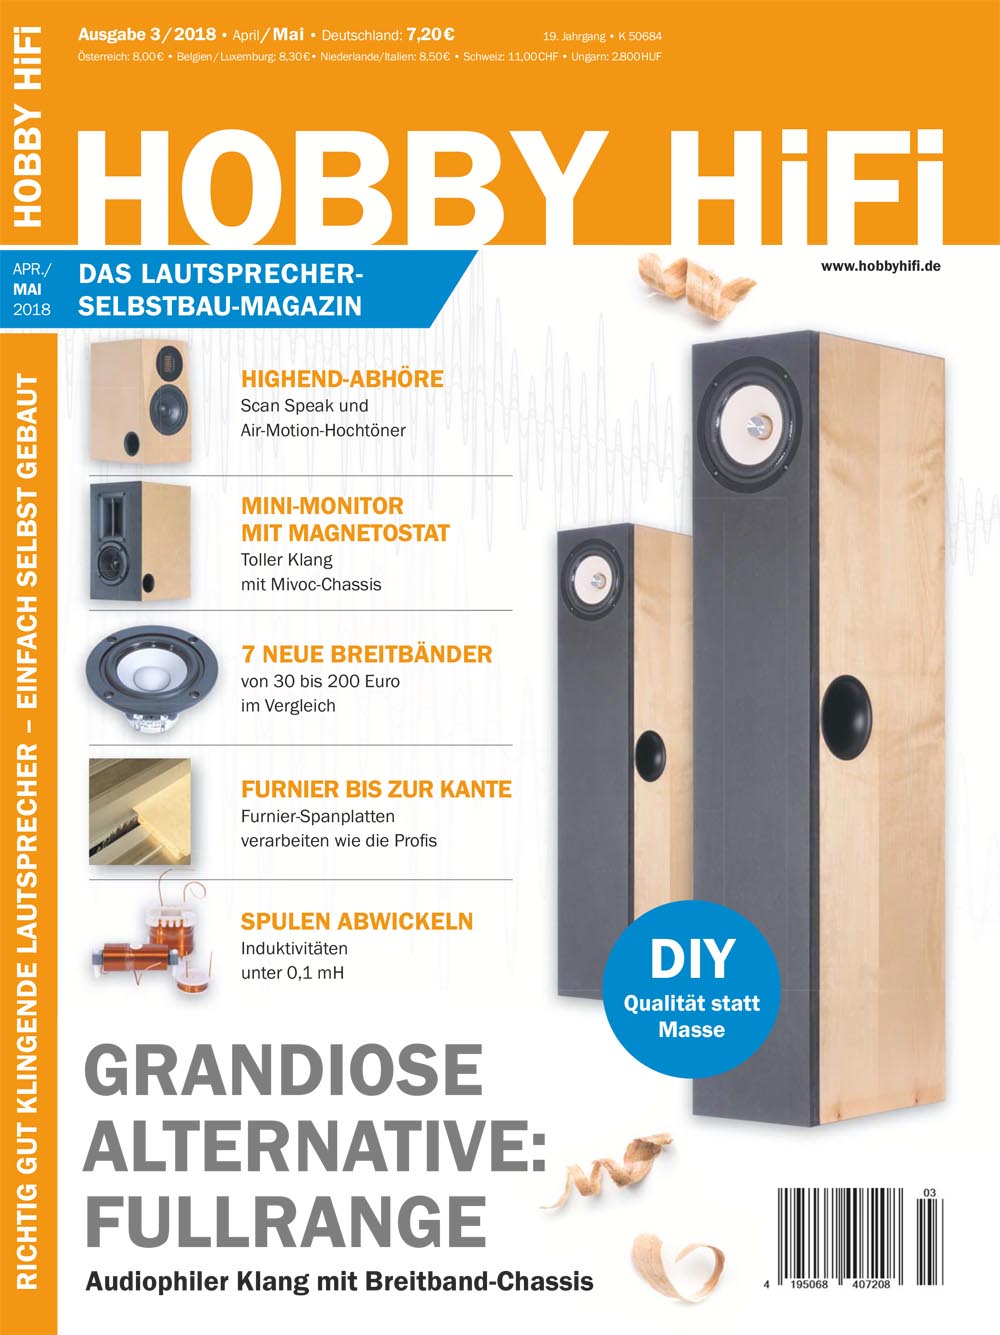 Hobby Hifi 2018 Ausgabe 3-2018